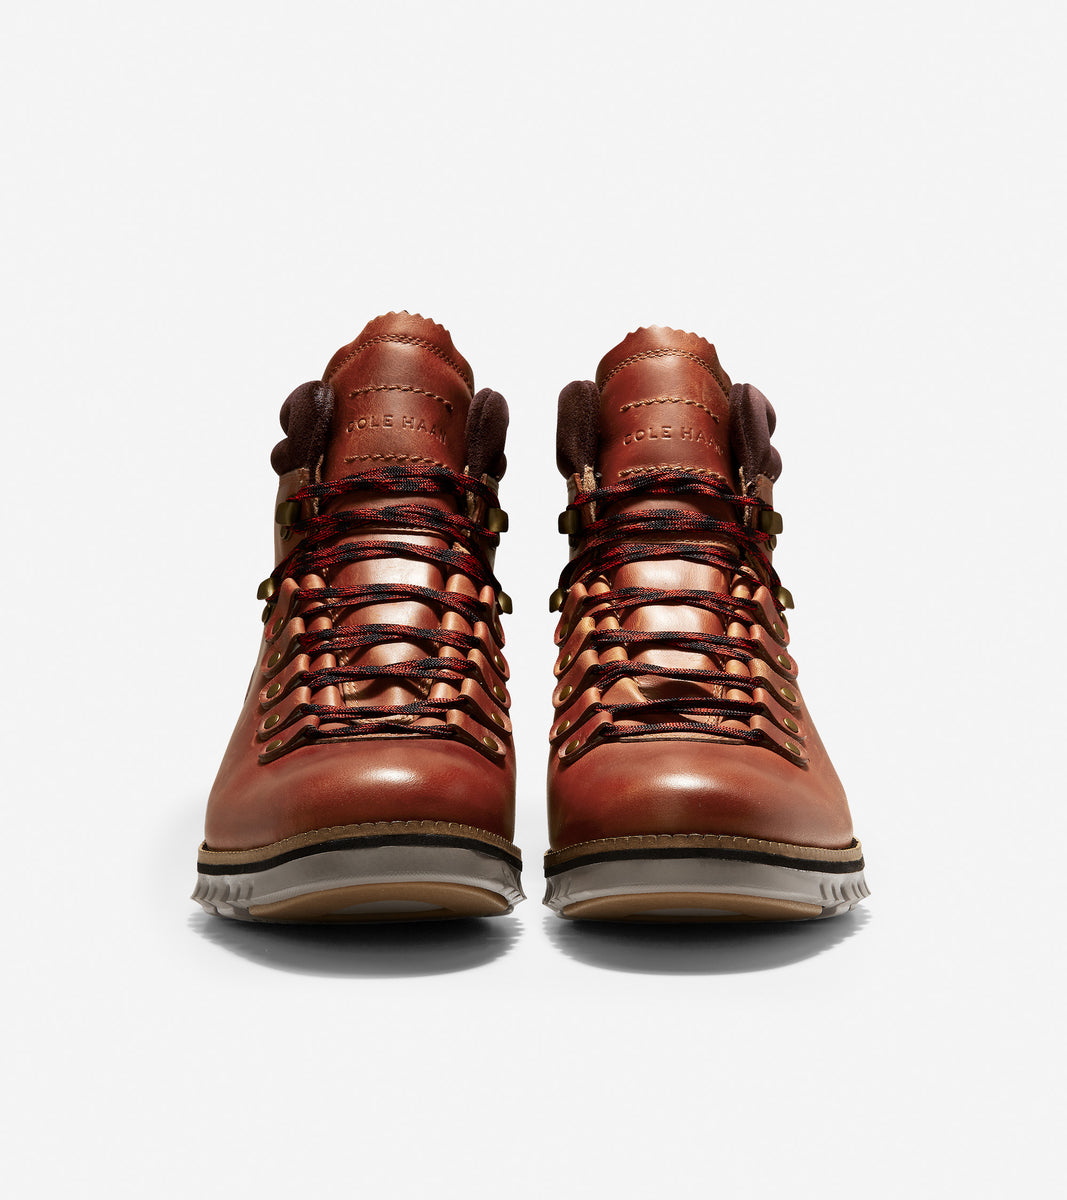 ColeHaan-ZERØGRAND Hiker Boot-c30405-British Tan Leather